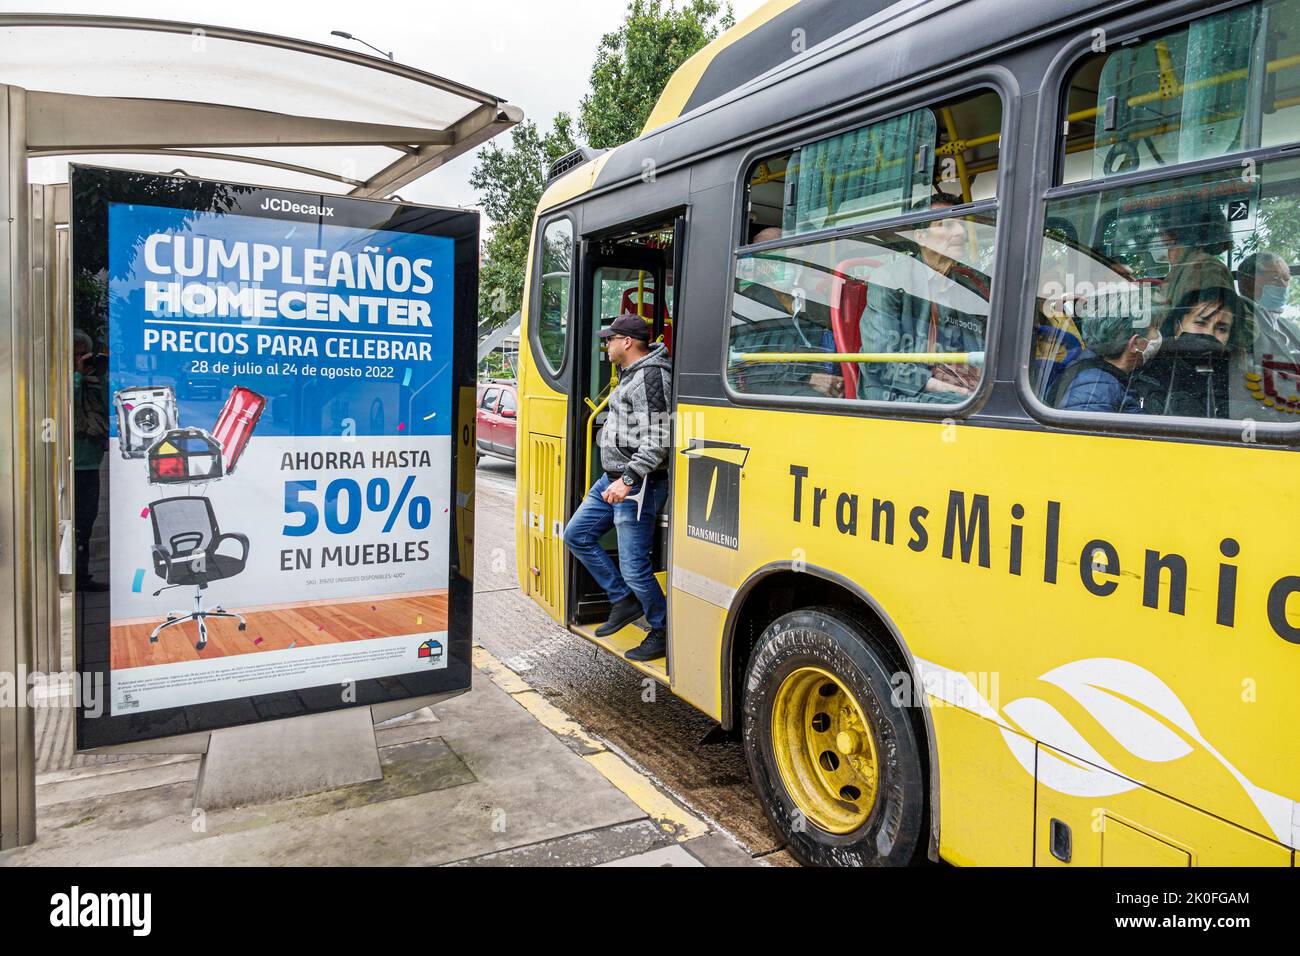 Bogota Colombie,Avenida El Dorado Calle 26,bus-stop publicité panneau panneau signe Homecenter magasin de meubles anniversaire vente rabais 50%,transm Banque D'Images